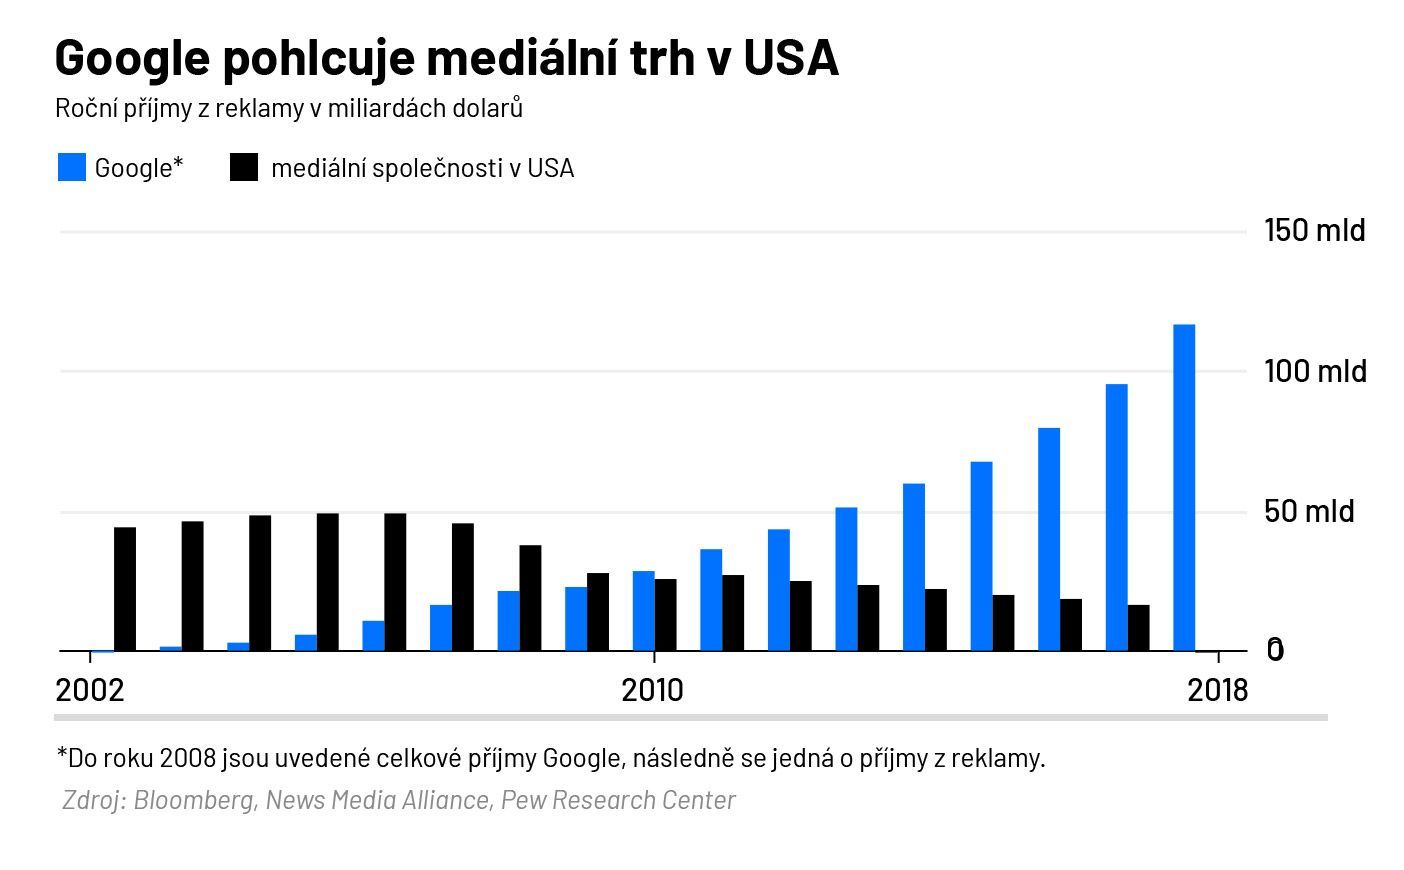 Google pohlcuje mediální trh v USA